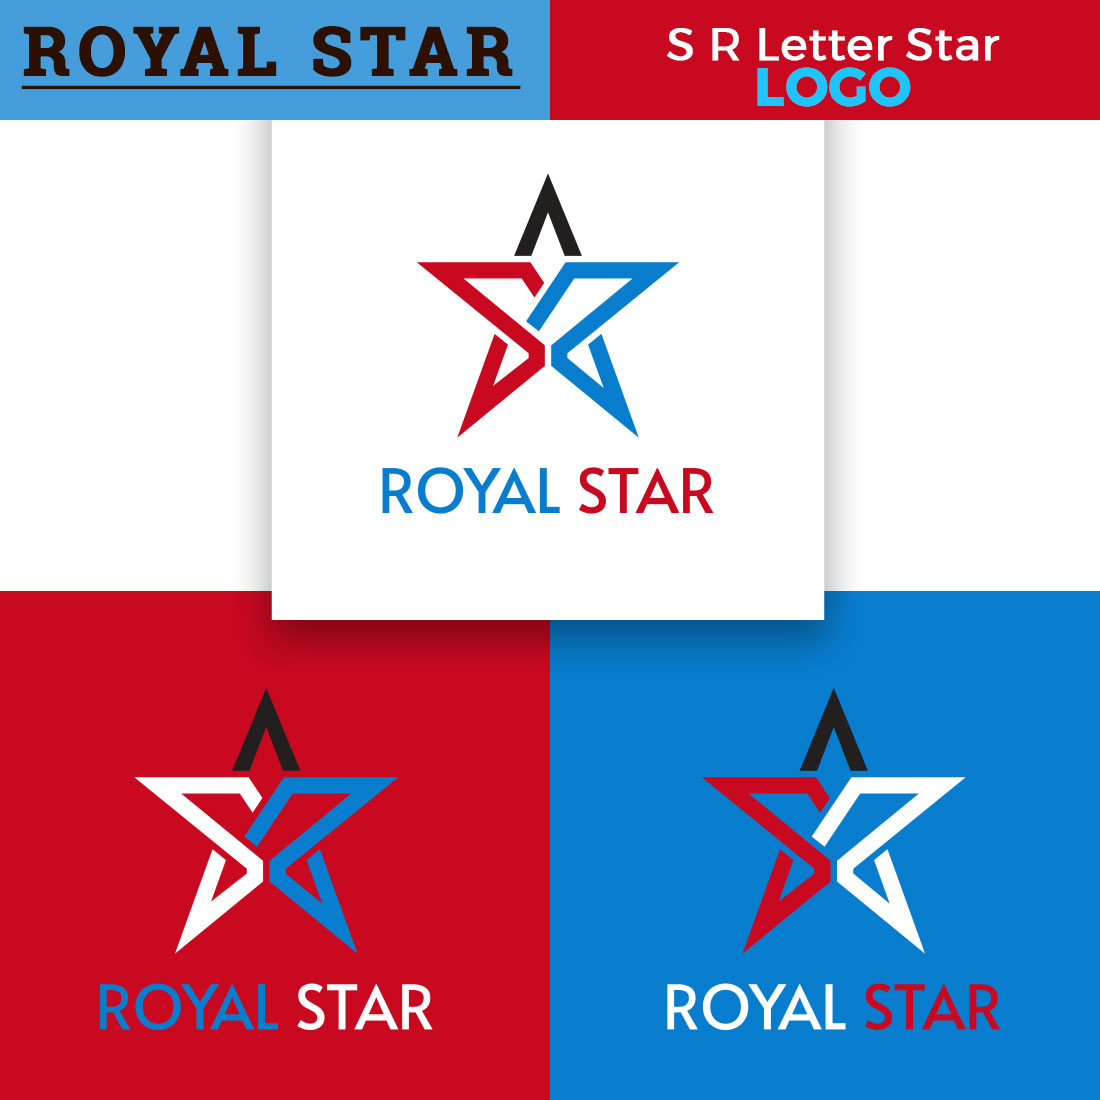 Letter S R Luxury Logo Design cover image.